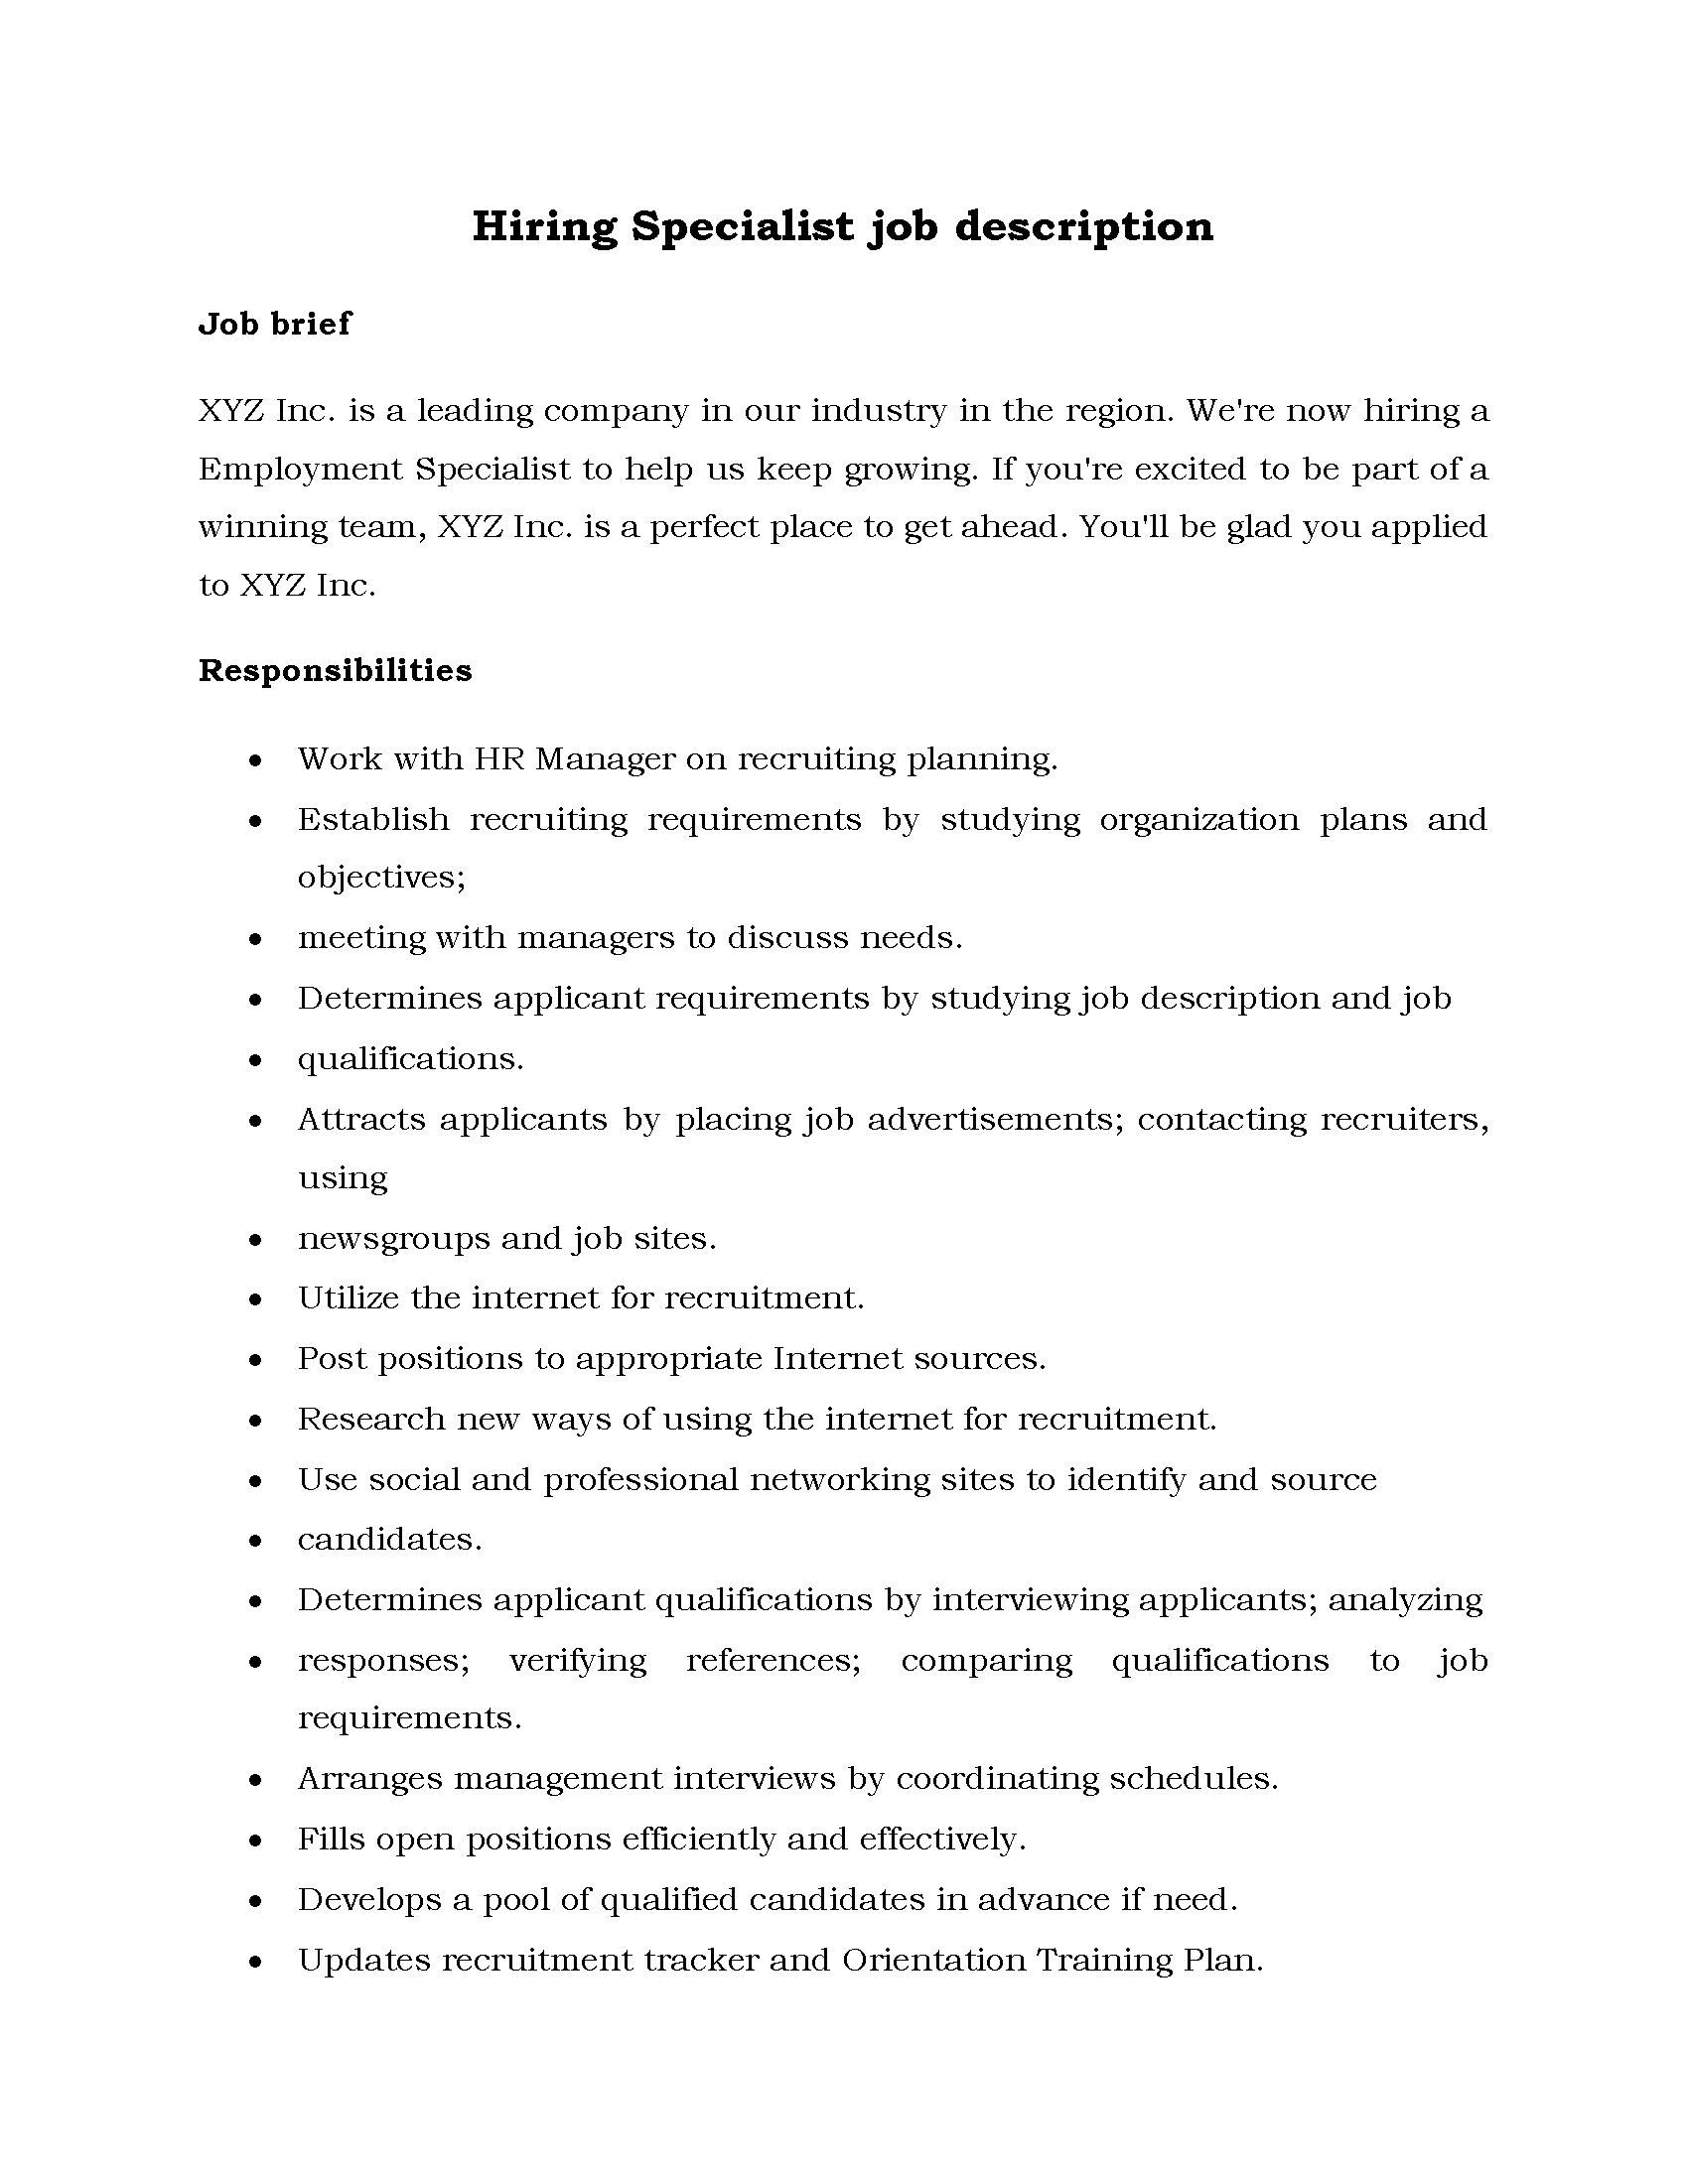 50-Hiring Specialist job description